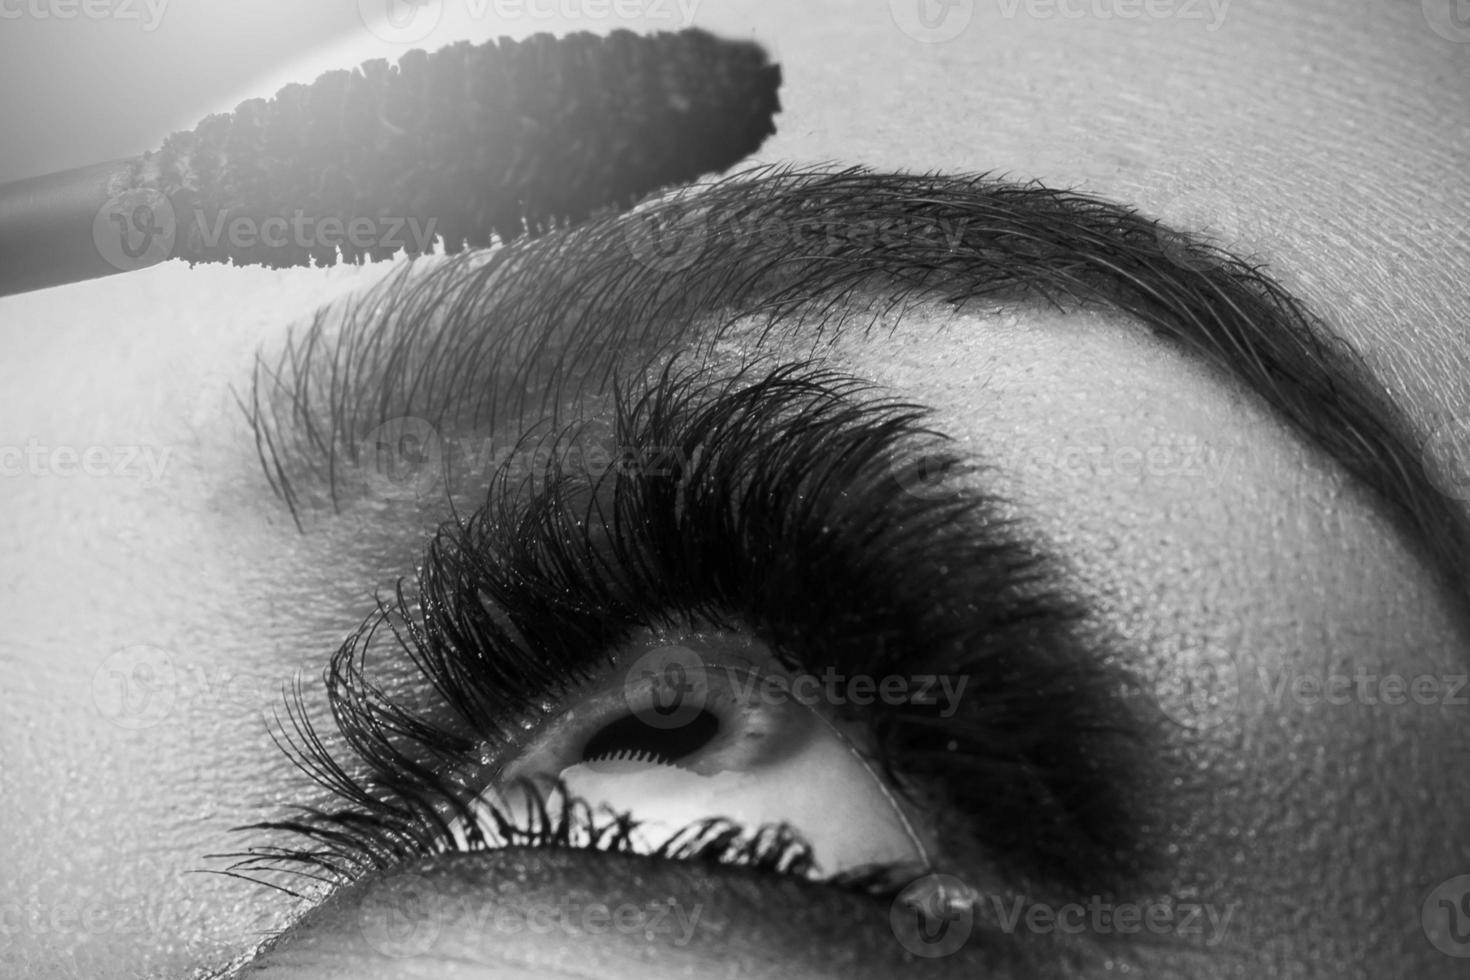 Female eye with beautiful long lashes and mascara wand photo